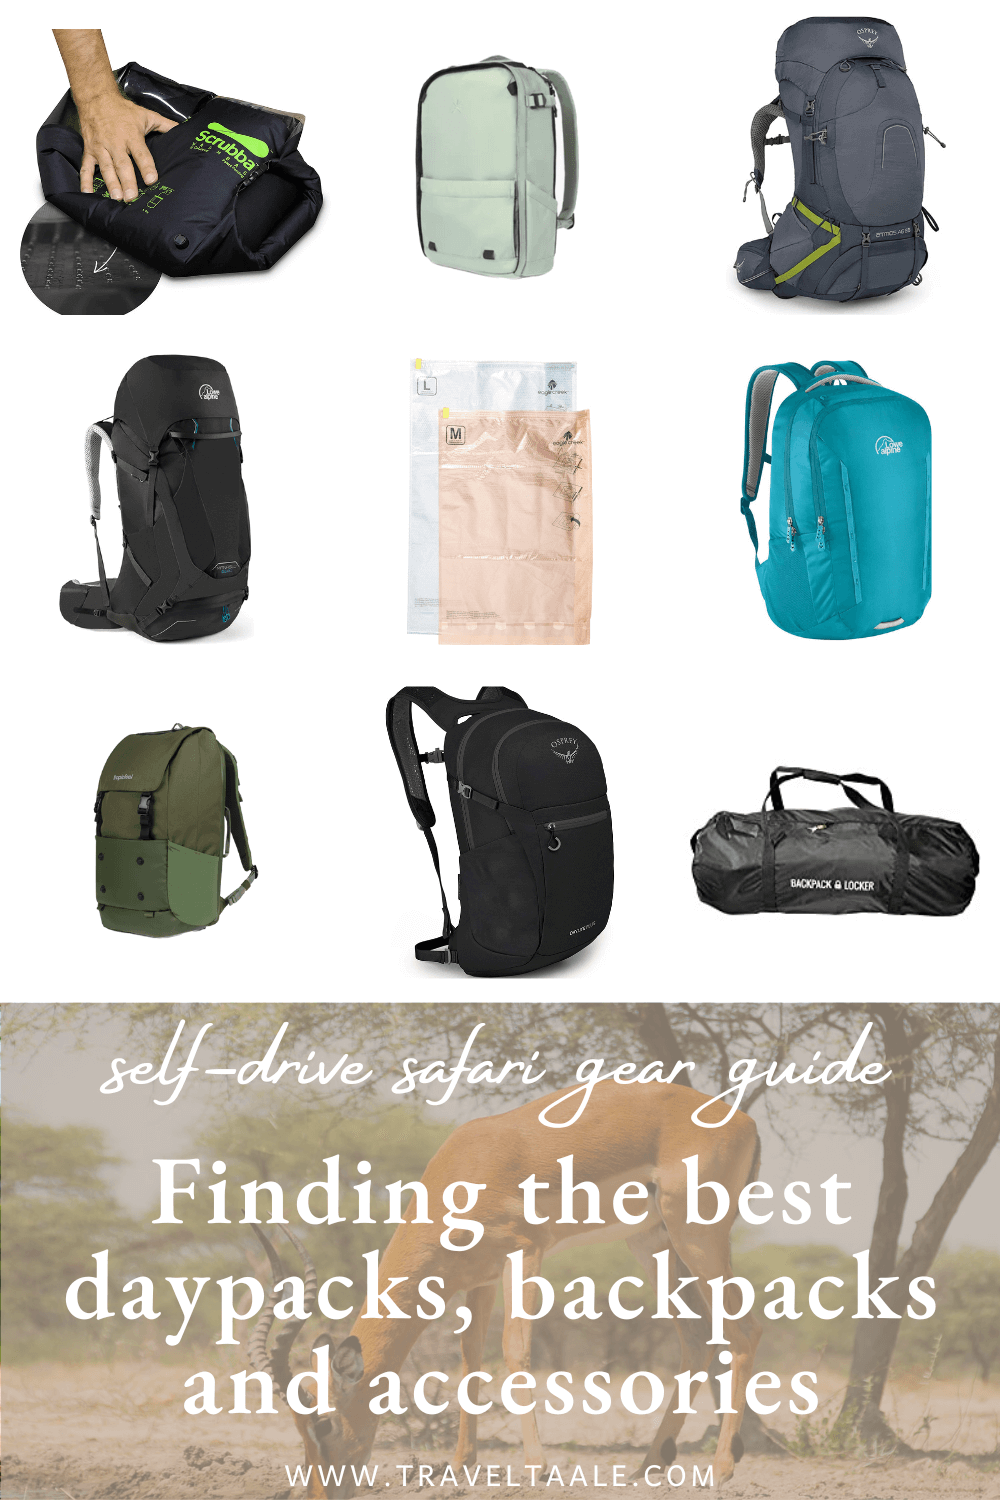 Safari Gear Guide: backpacks and daypacks for safari